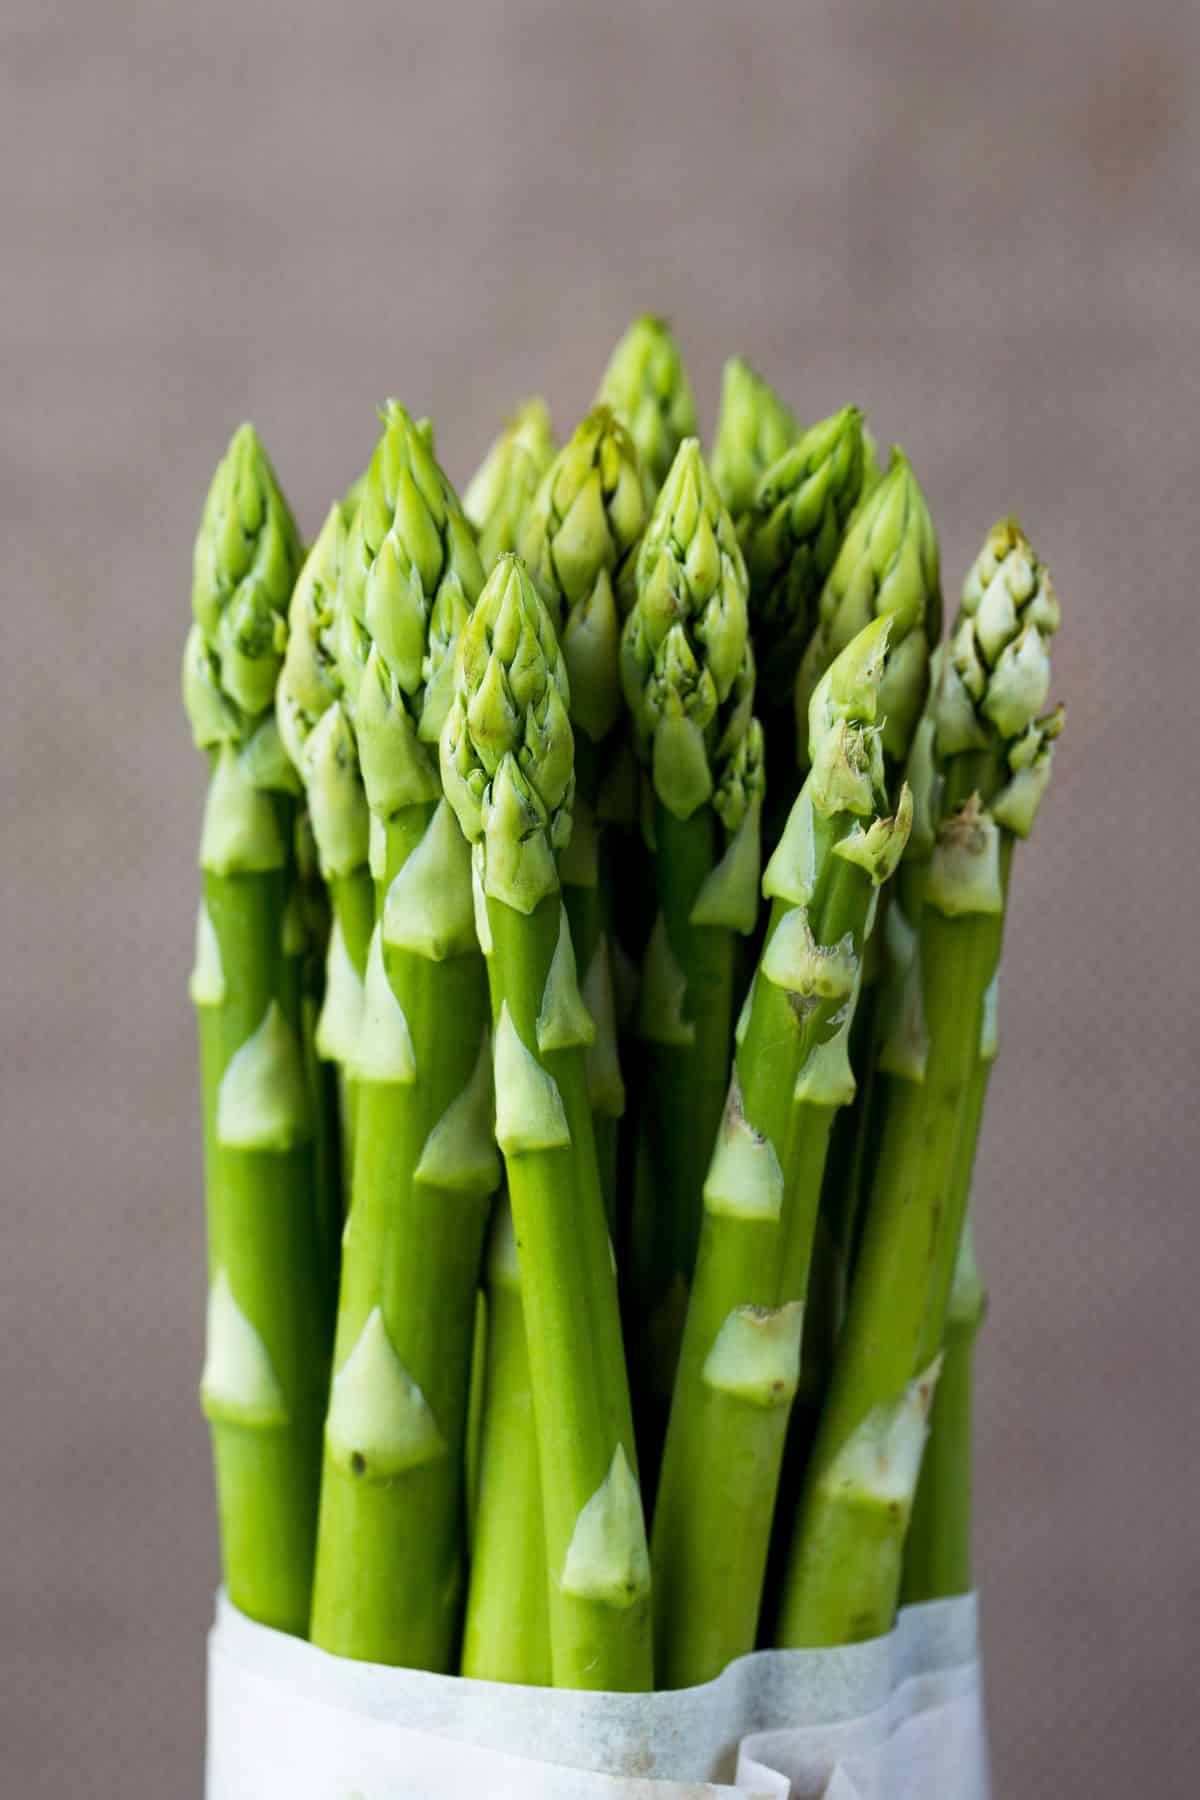 bunch of asparagus.